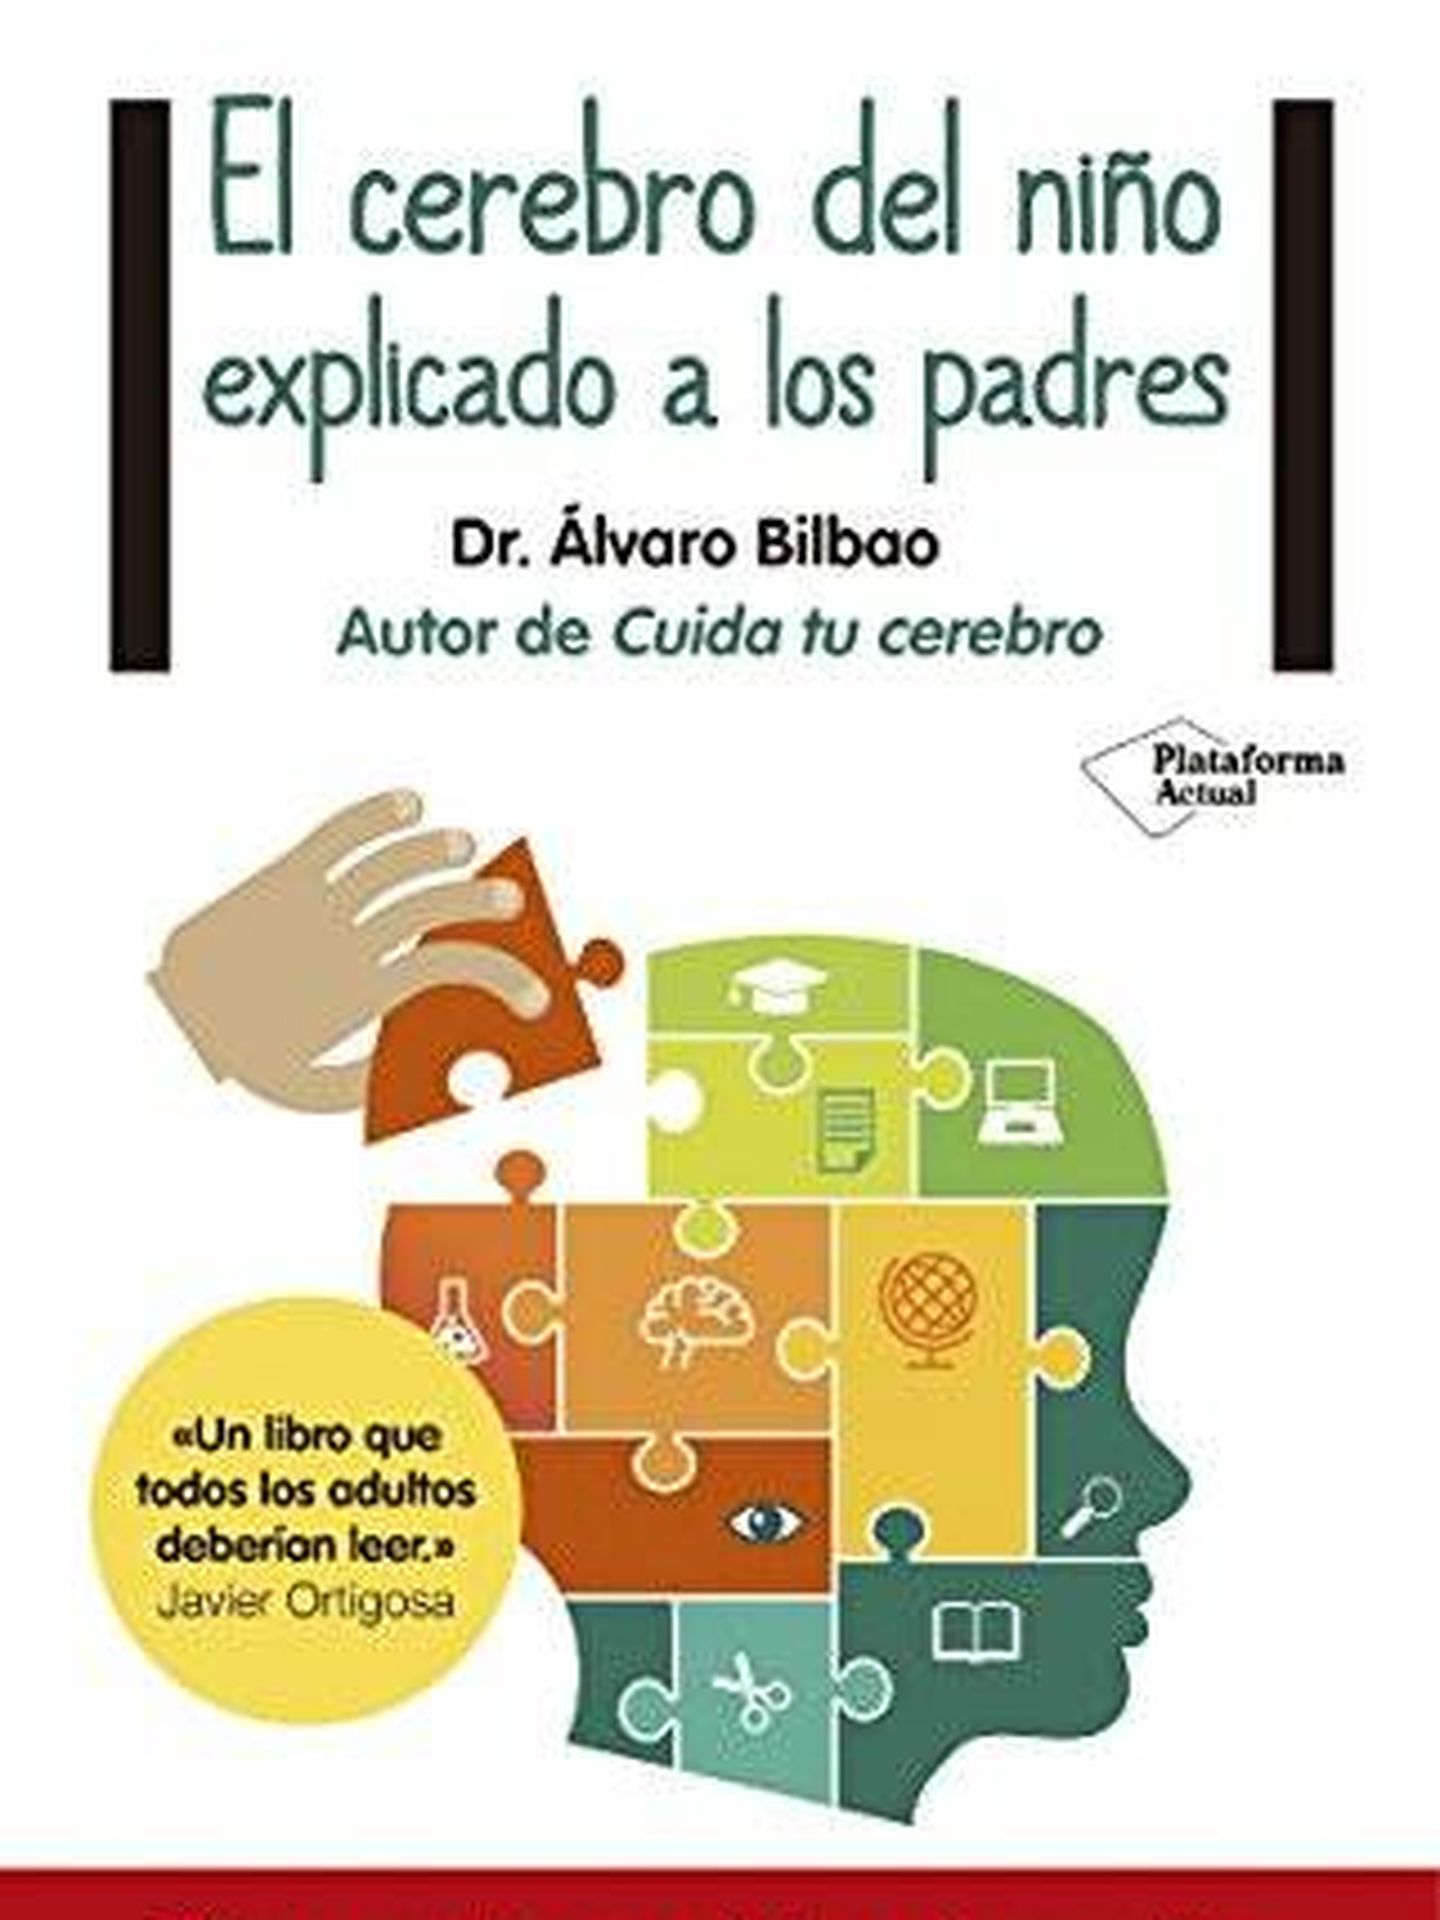 'El cerebro del niño explicado a los padres', de Álvaro Bilbao. (Cortesía)